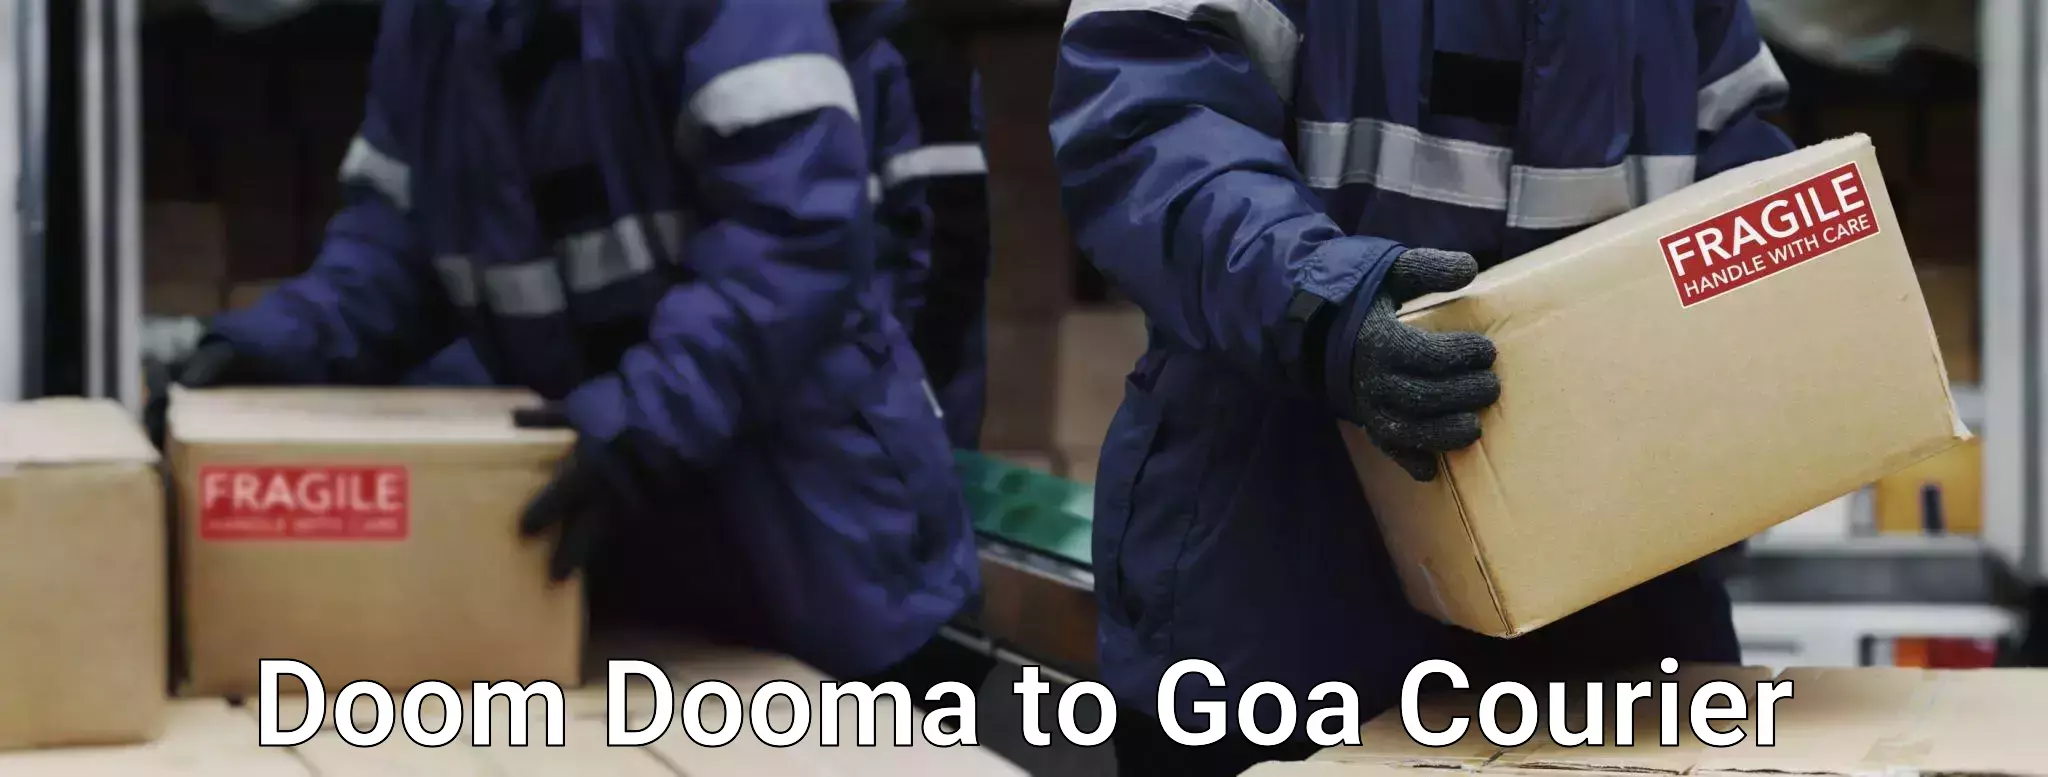 Baggage relocation service Doom Dooma to Goa University